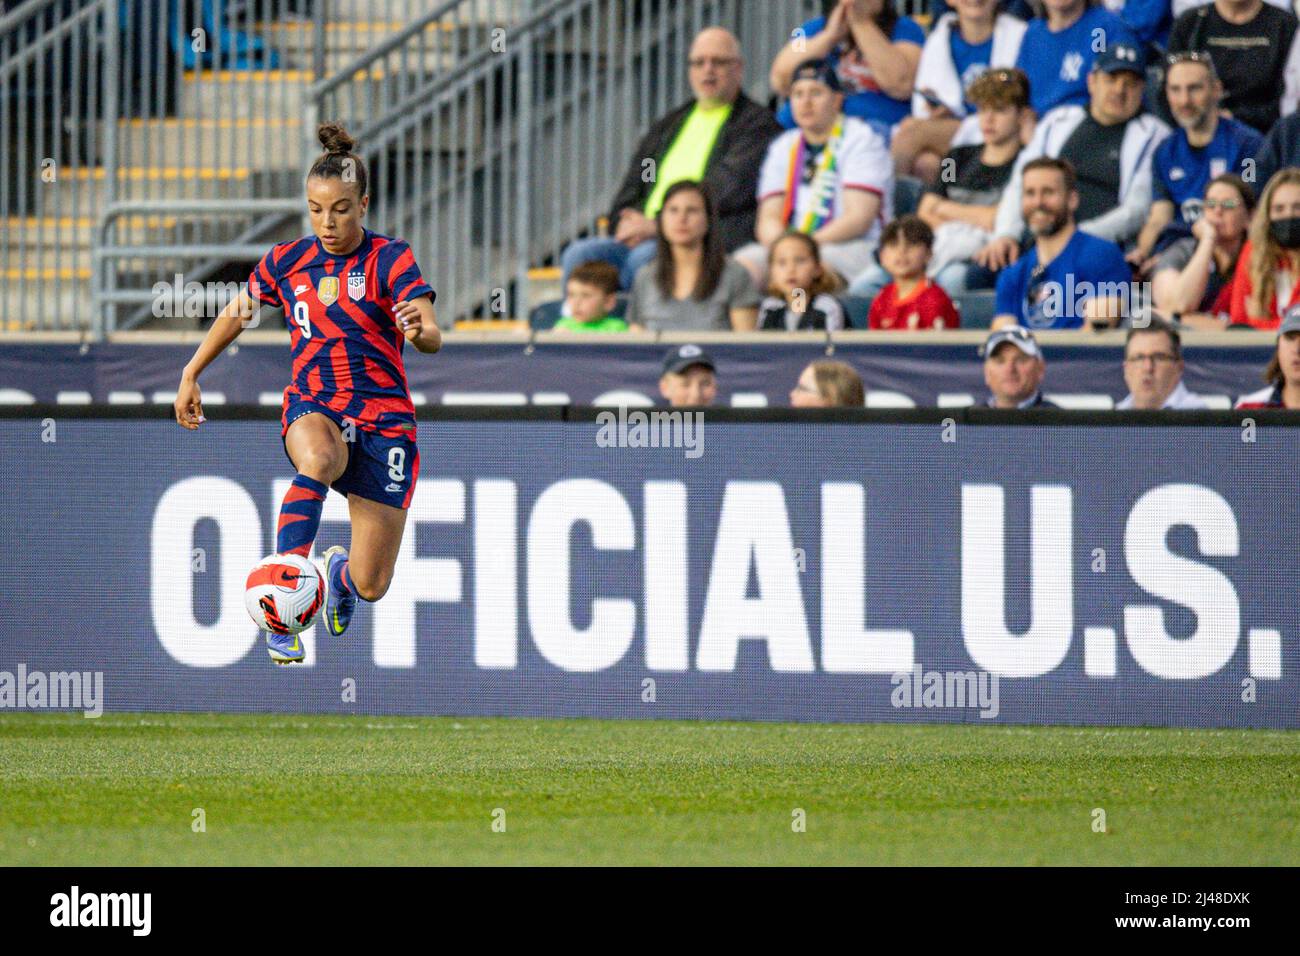 Mallory Swanson Pugh dribbelt während eines Fußballspiels der US-Frauennationalmannschaft. Professionelle Fußballerin/Fußballspielerin Stockfoto